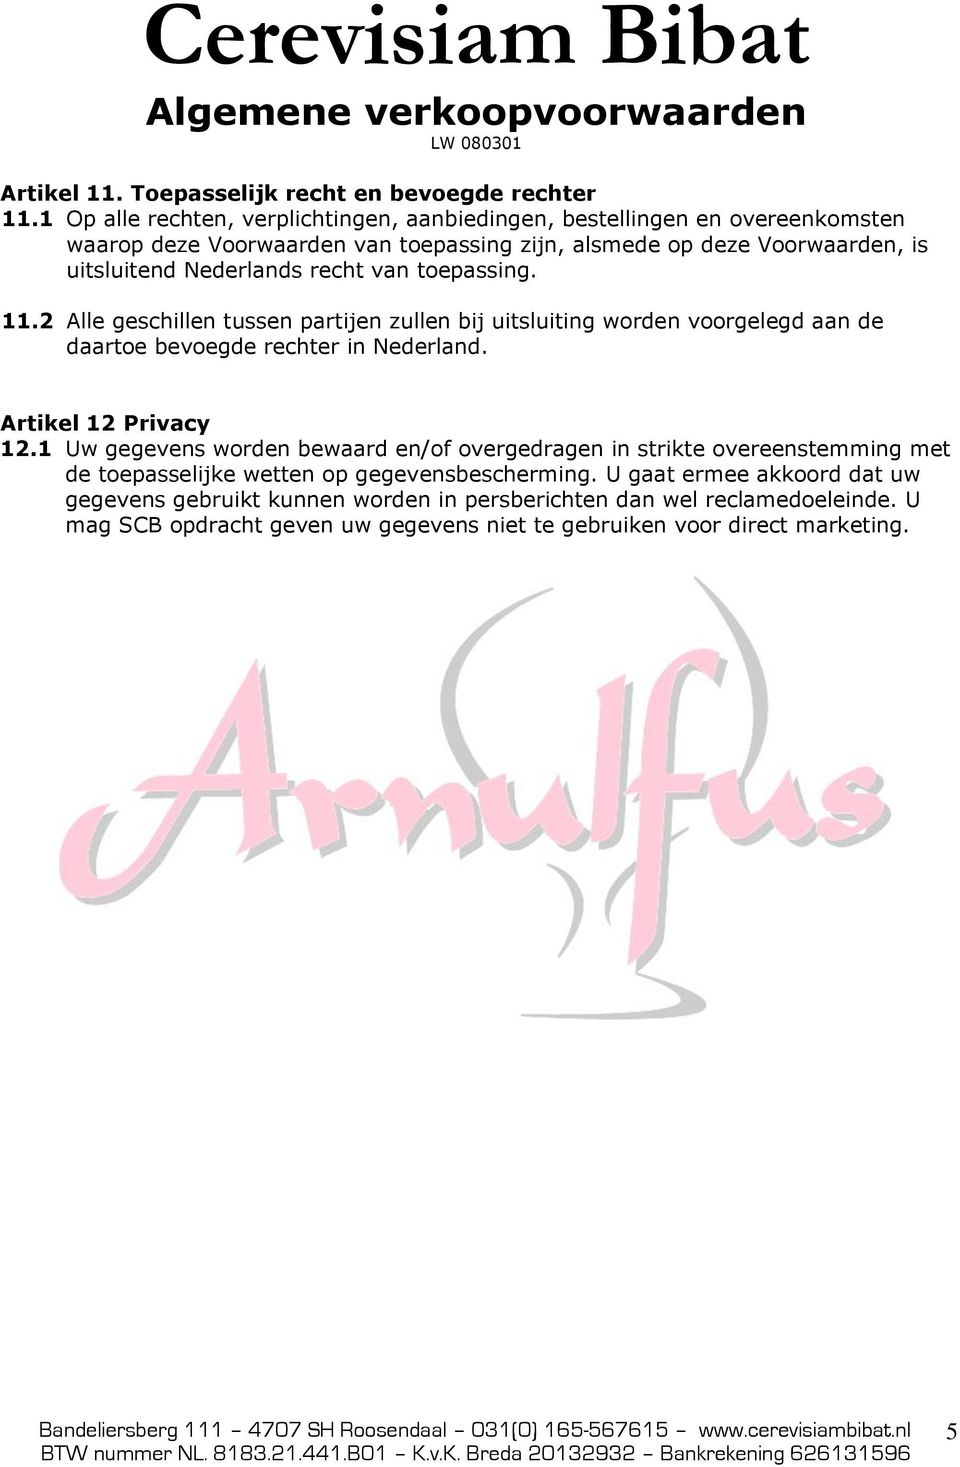 Nederlands recht van toepassing. 11.2 Alle geschillen tussen partijen zullen bij uitsluiting worden voorgelegd aan de daartoe bevoegde rechter in Nederland.